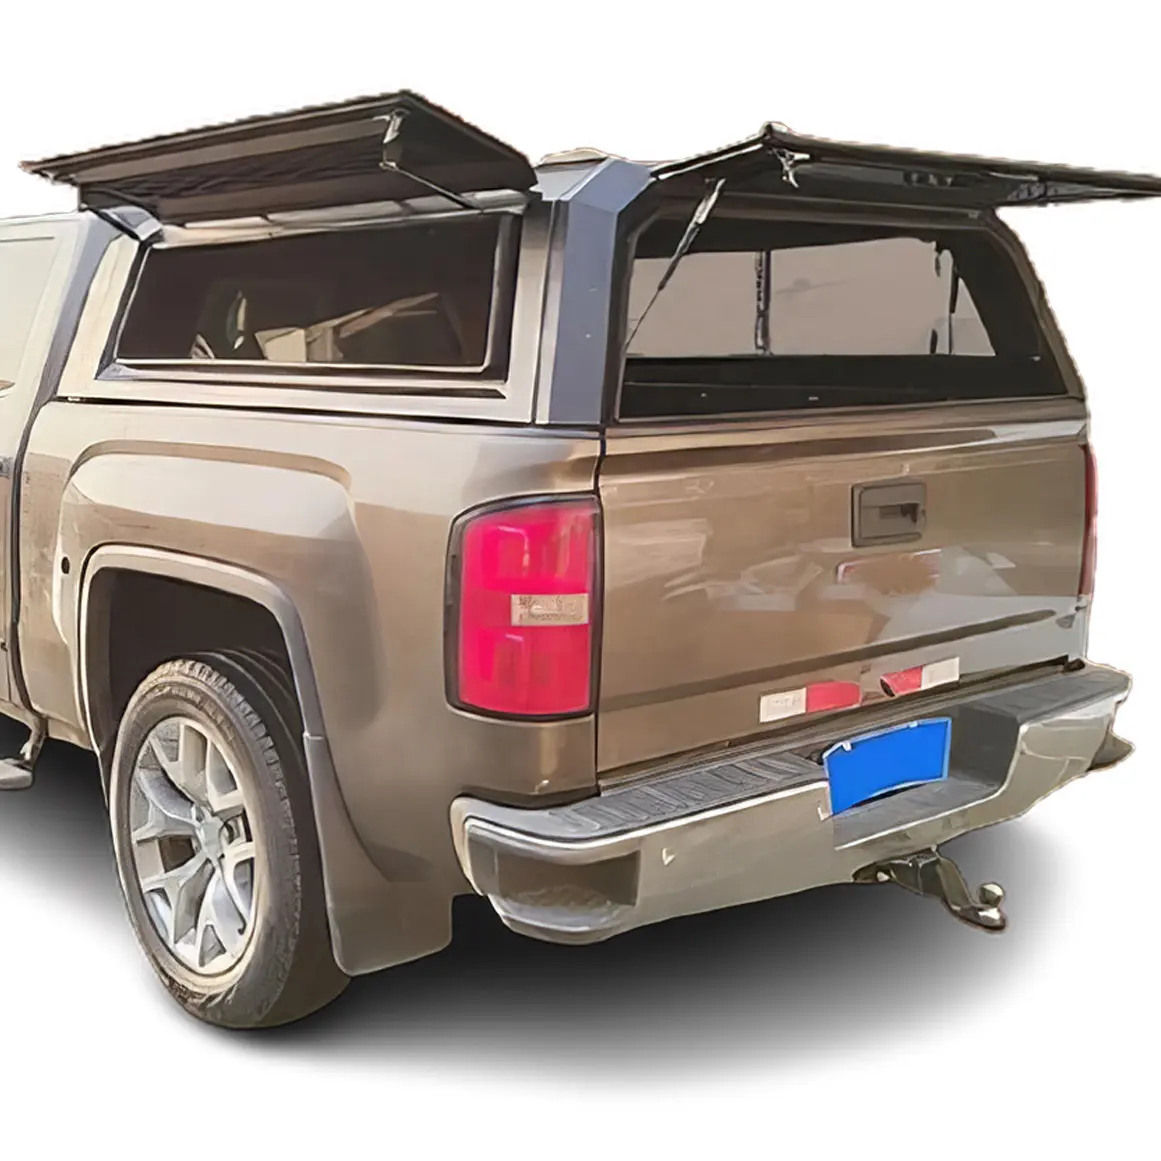 Baldacchino impermeabile pick-up fornitore di buon prezzo hardtop baldacchino in alluminio camion tettuccio hardtop per GMC letto corto così via